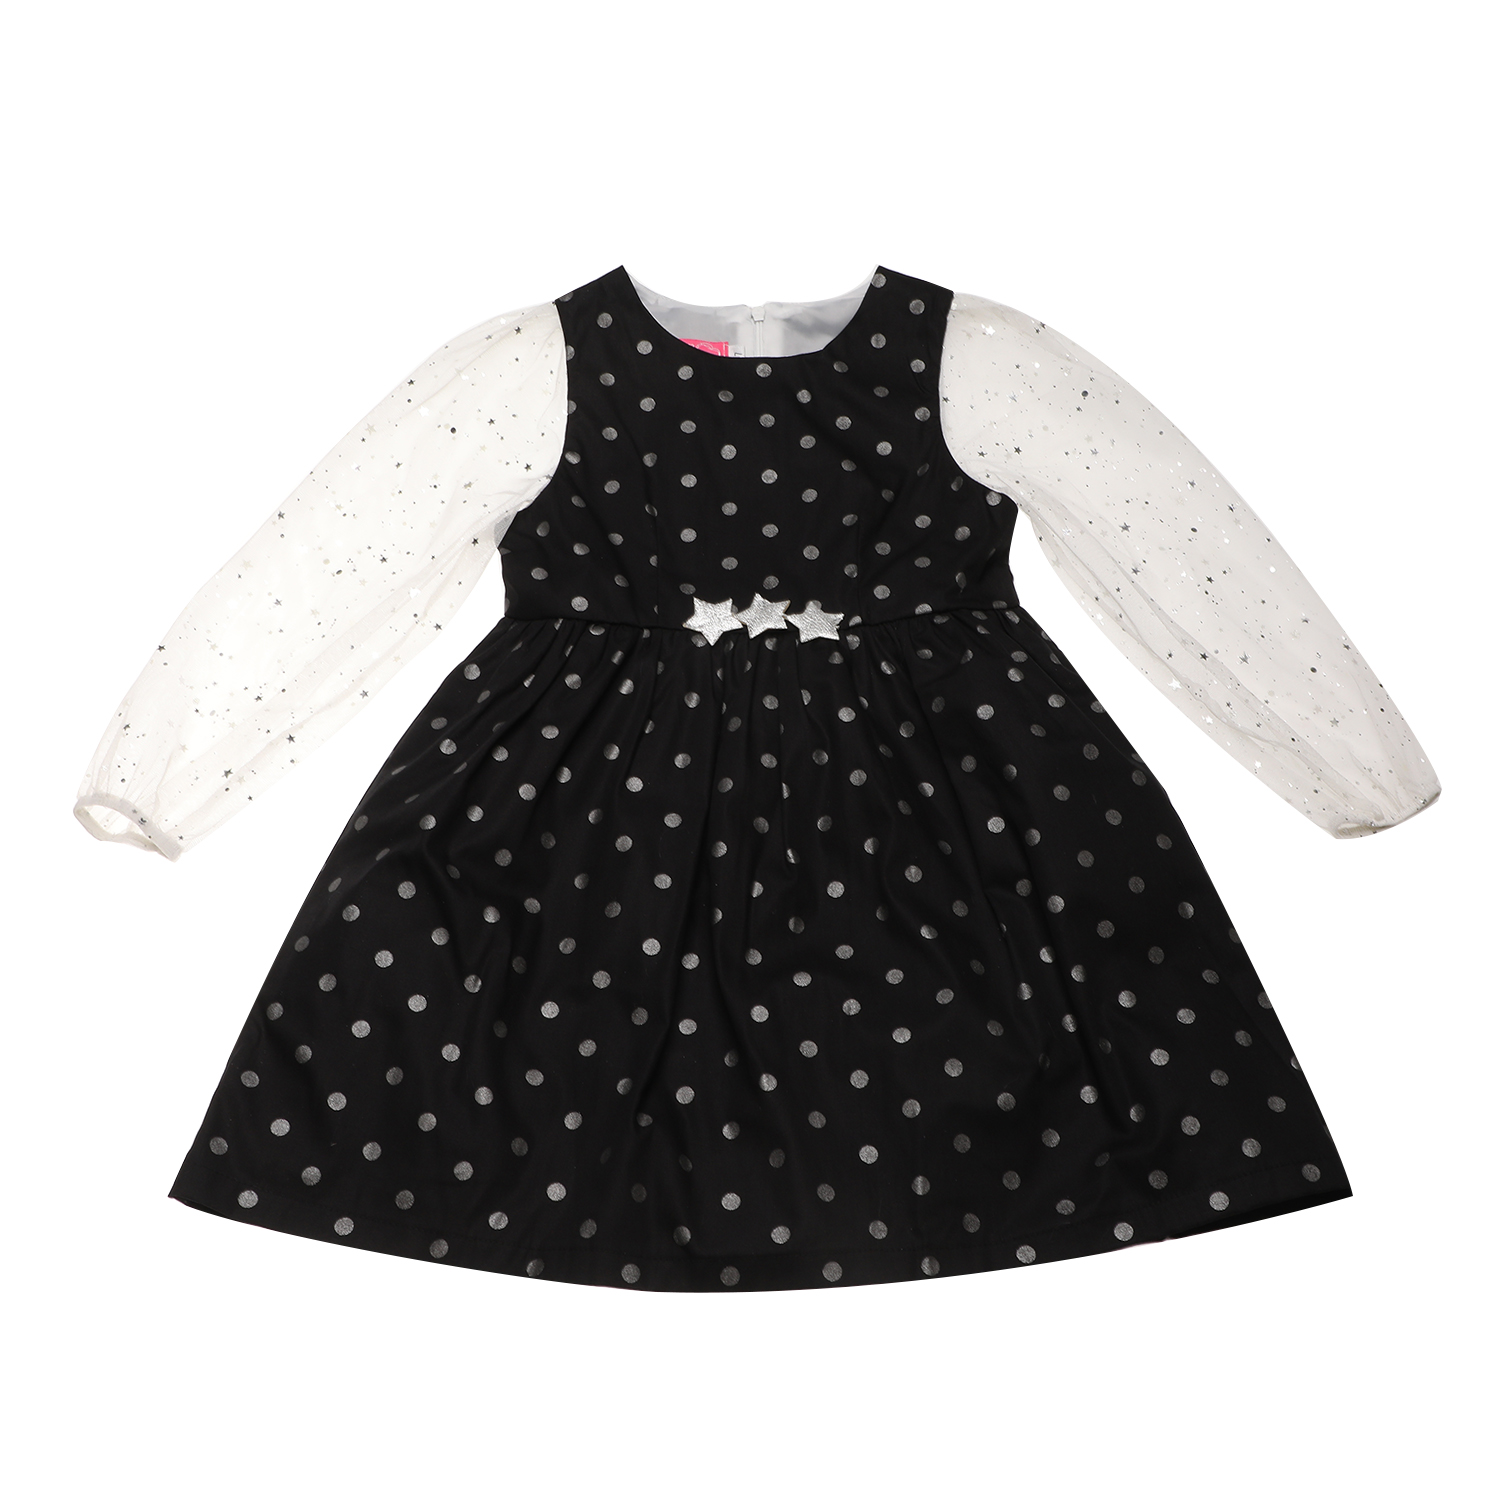 Παιδικά/Girls/Ρούχα/Φορέματα Μακρυμάνικα SAM 0-13 - Παιδικό φόρεμα SAM 0-13 μαύρο ασημί